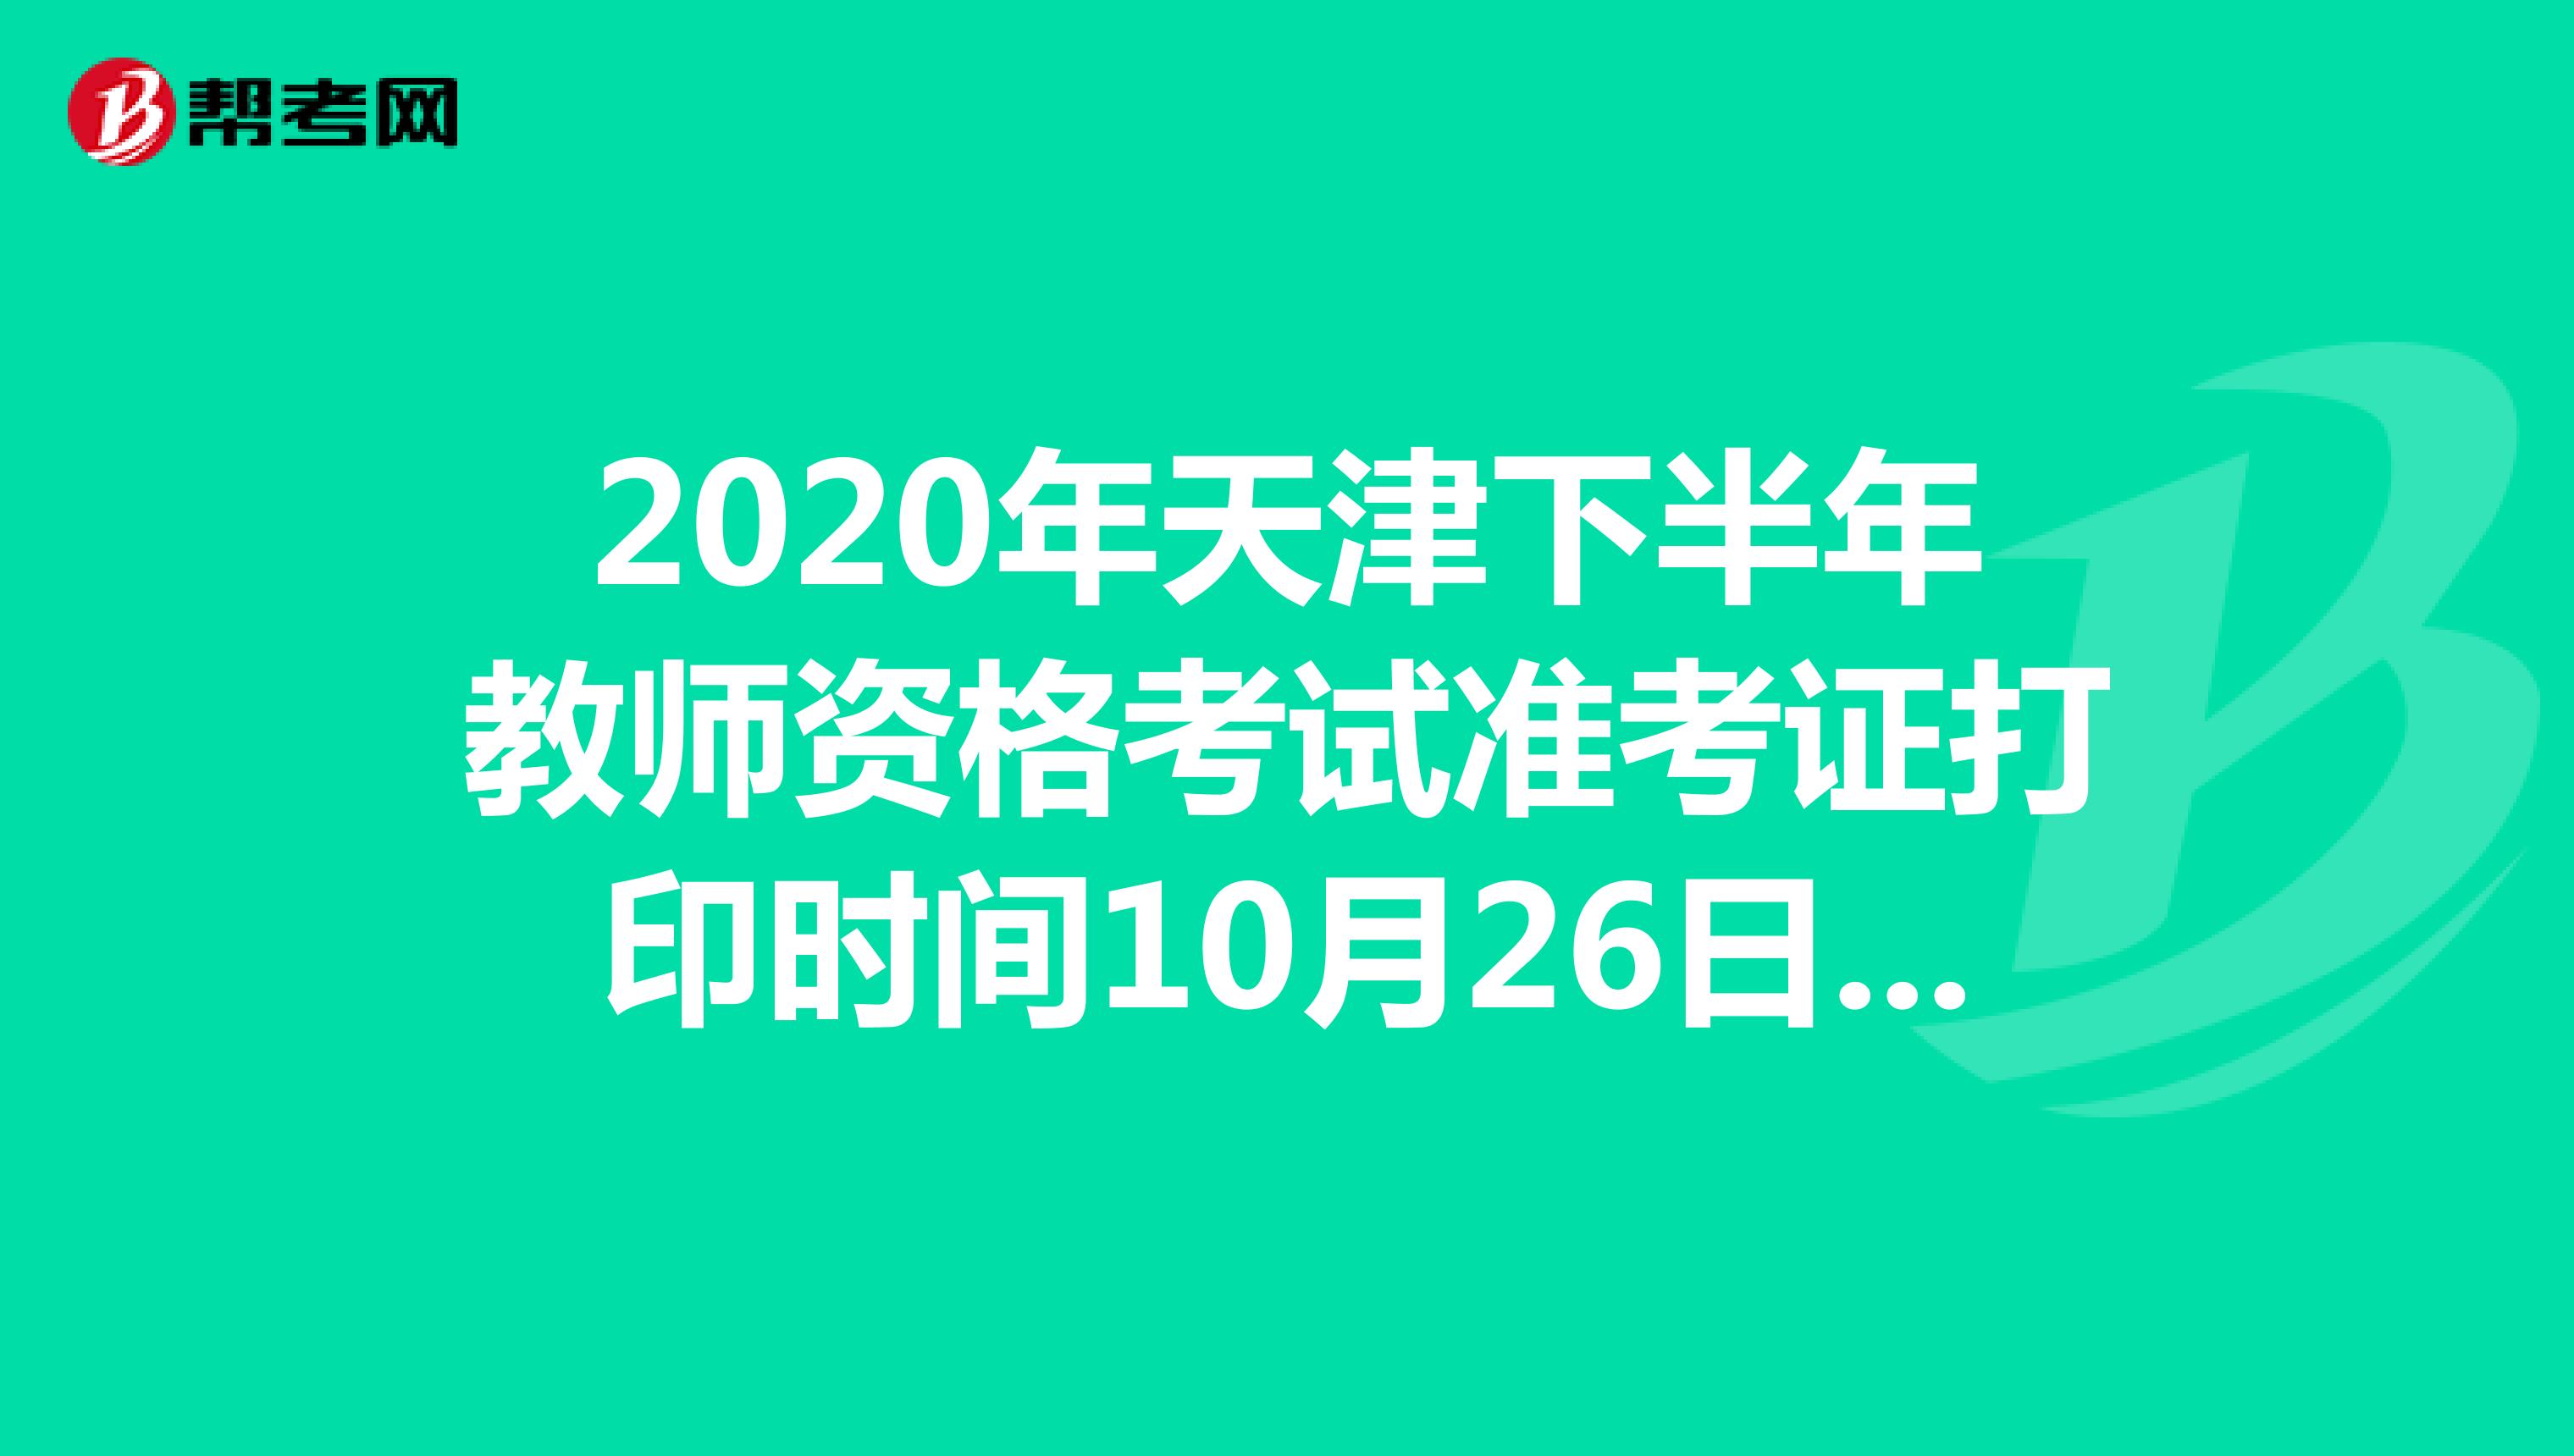 2020年天津下半年教师资格考试准考证打印时间10月26日-31日